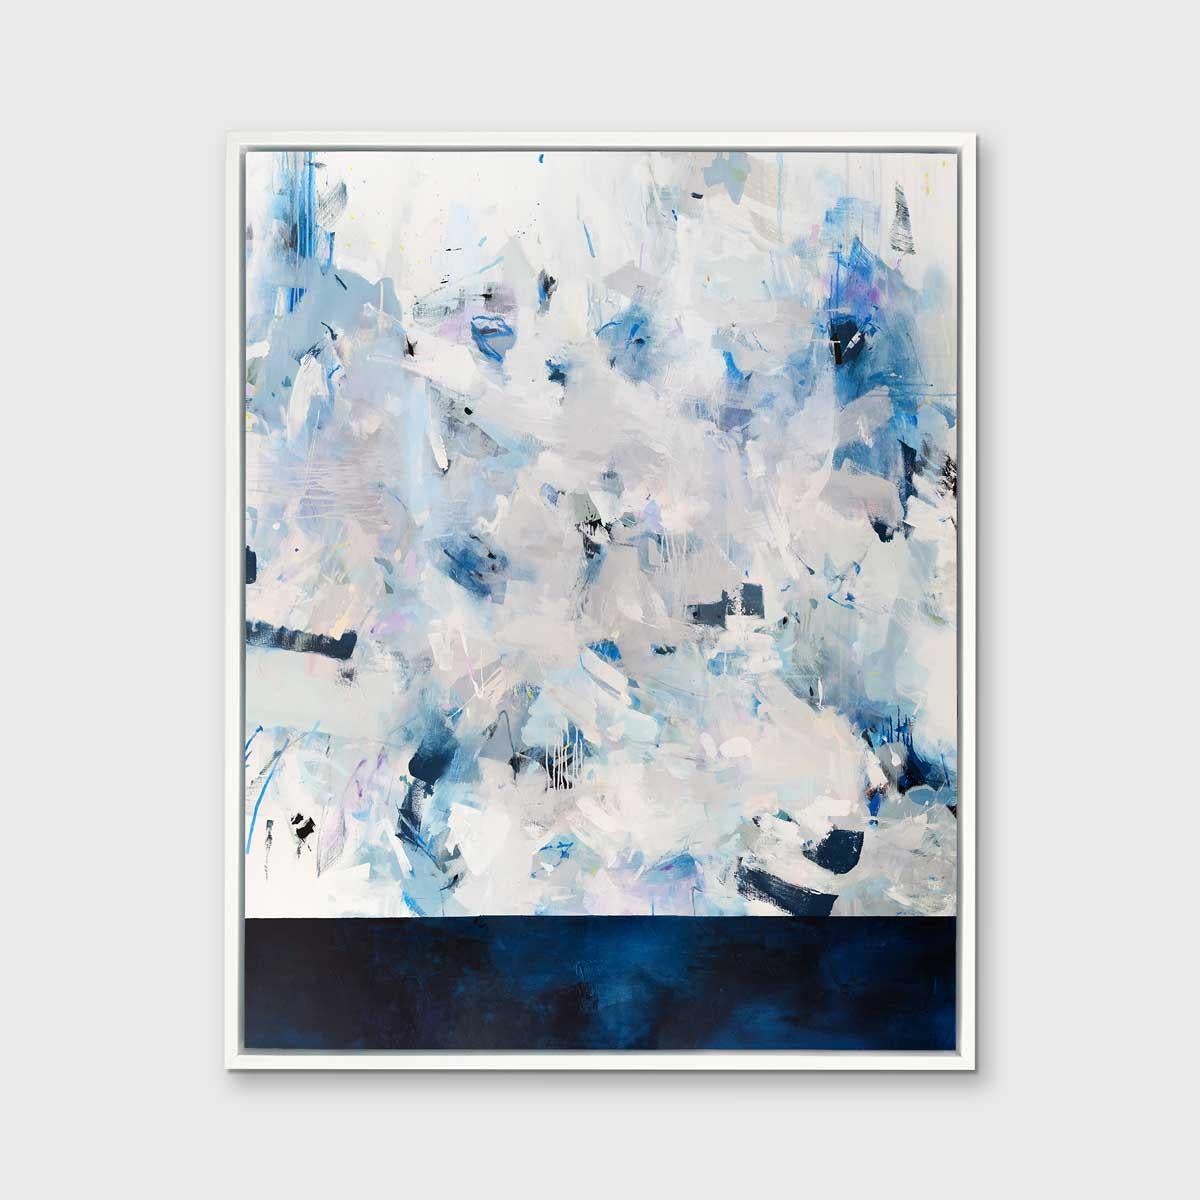 Dieser abstrakte Giclée-Druck in limitierter Auflage von Kelly Rossetti ist in kühlen Blau- und Weißtönen gehalten. Der untere Teil der Komposition ist in einem tiefen Mitternachtsblau gehalten, das durch die ausdrucksstarken Pinselstriche in Grau,